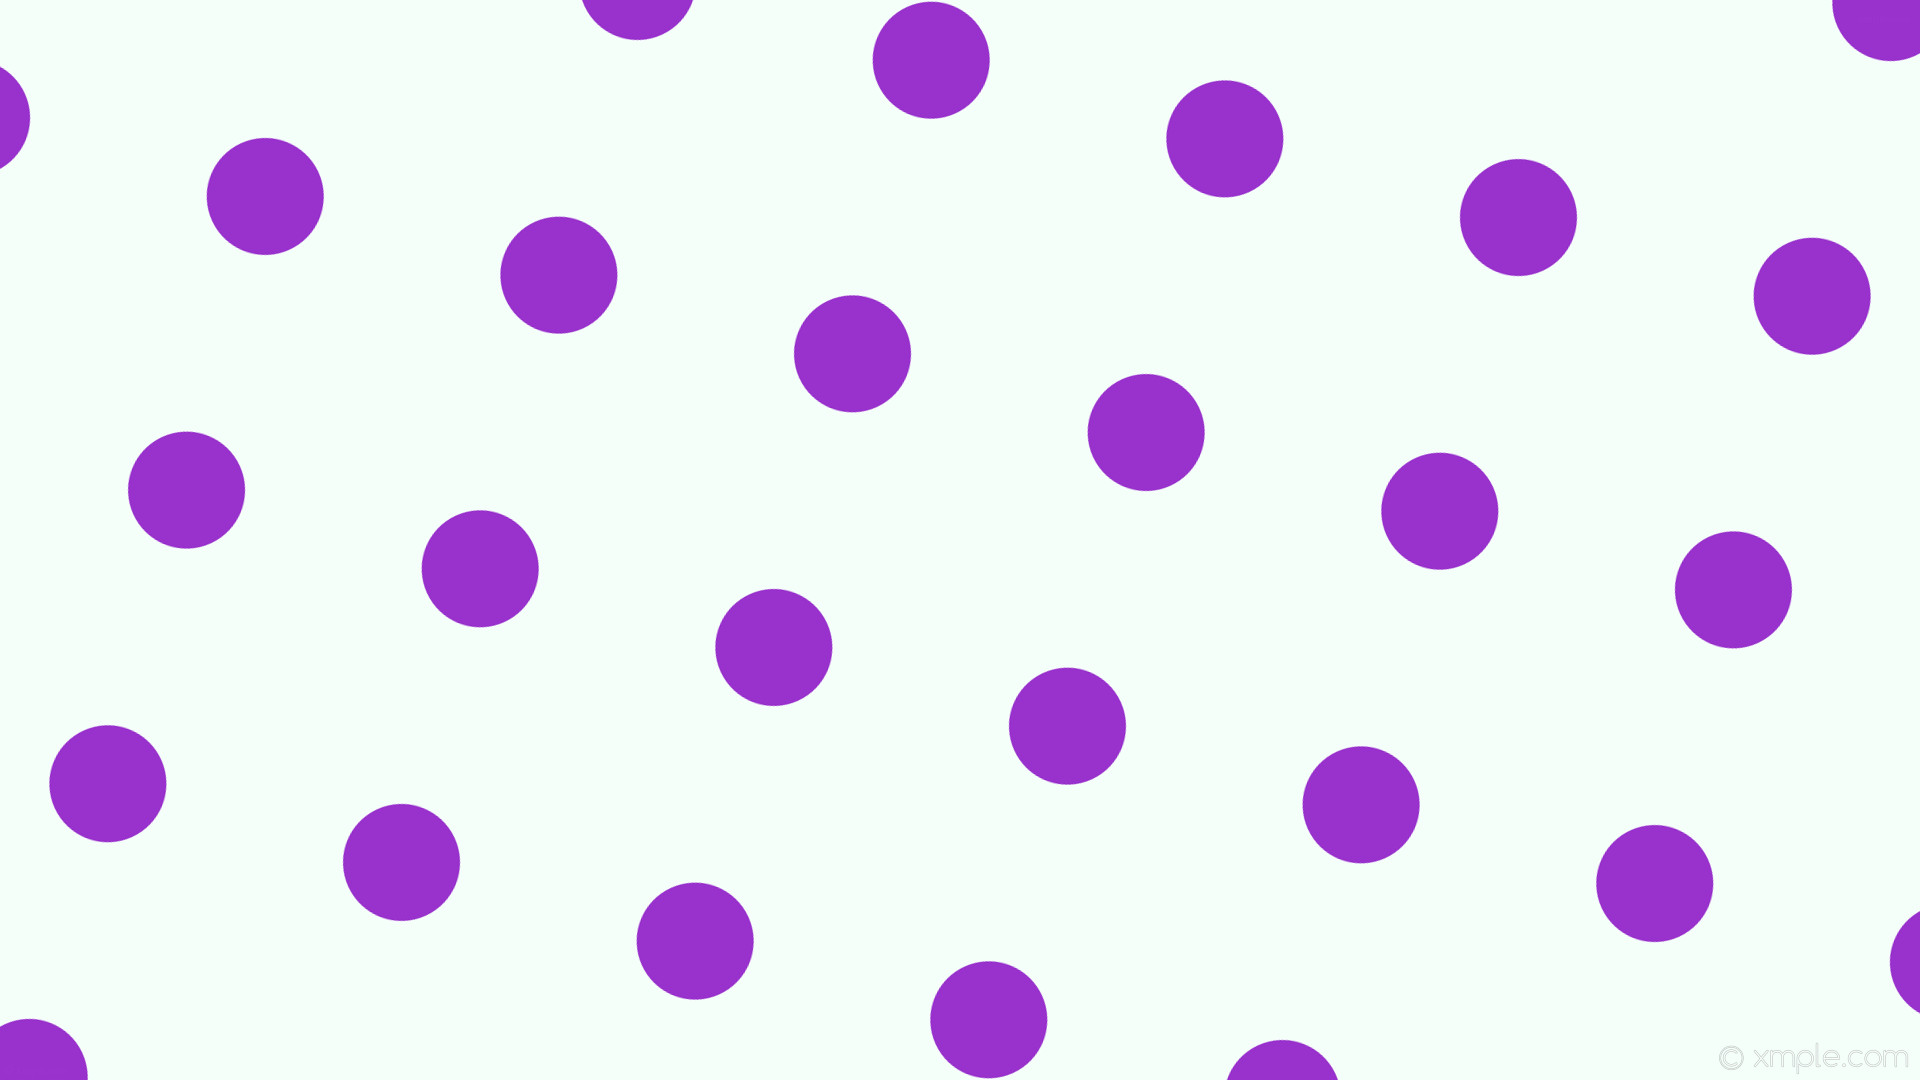 1920x1080 wallpaper purple spots polka white dots mint cream dark orchid #f5fffa  #9932cc 75Â°